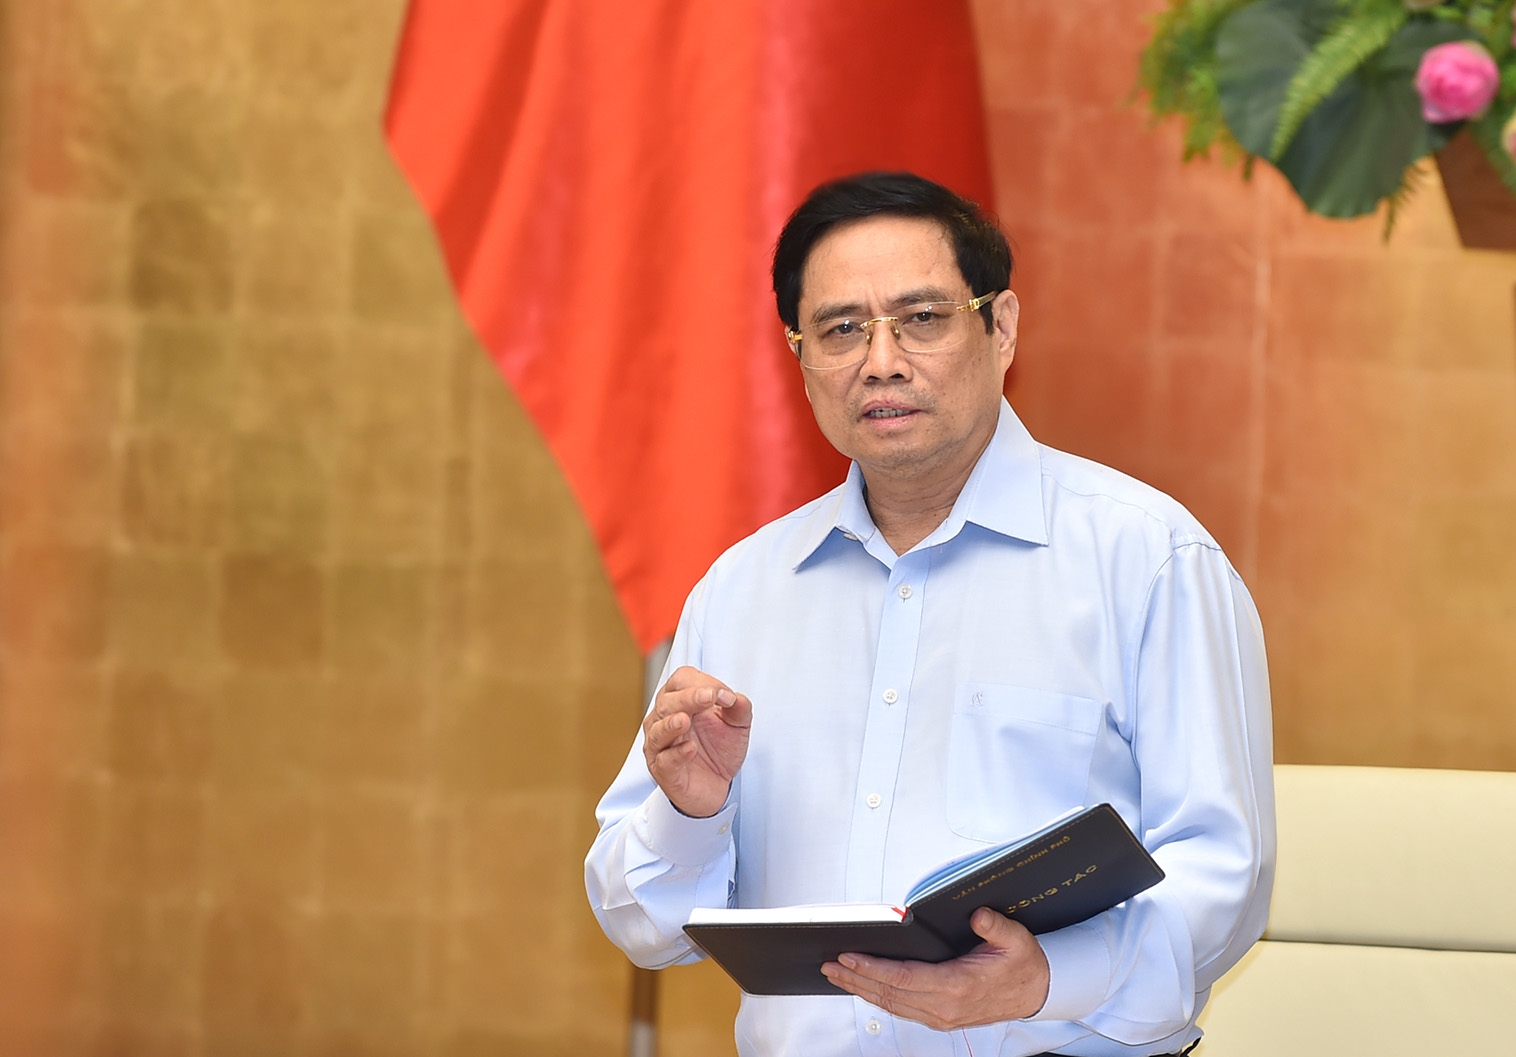 Thủ tướng Phạm Minh Chính yêu cầu Bí thư Tỉnh ủy, Thành ủy, Chủ tịch UBND các tỉnh, thành phố lãnh đạo, chỉ đạo thực hiện nghiêm nếu áp dụng Chỉ thị 16 và có thể ở mức cao hơn về một số điểm